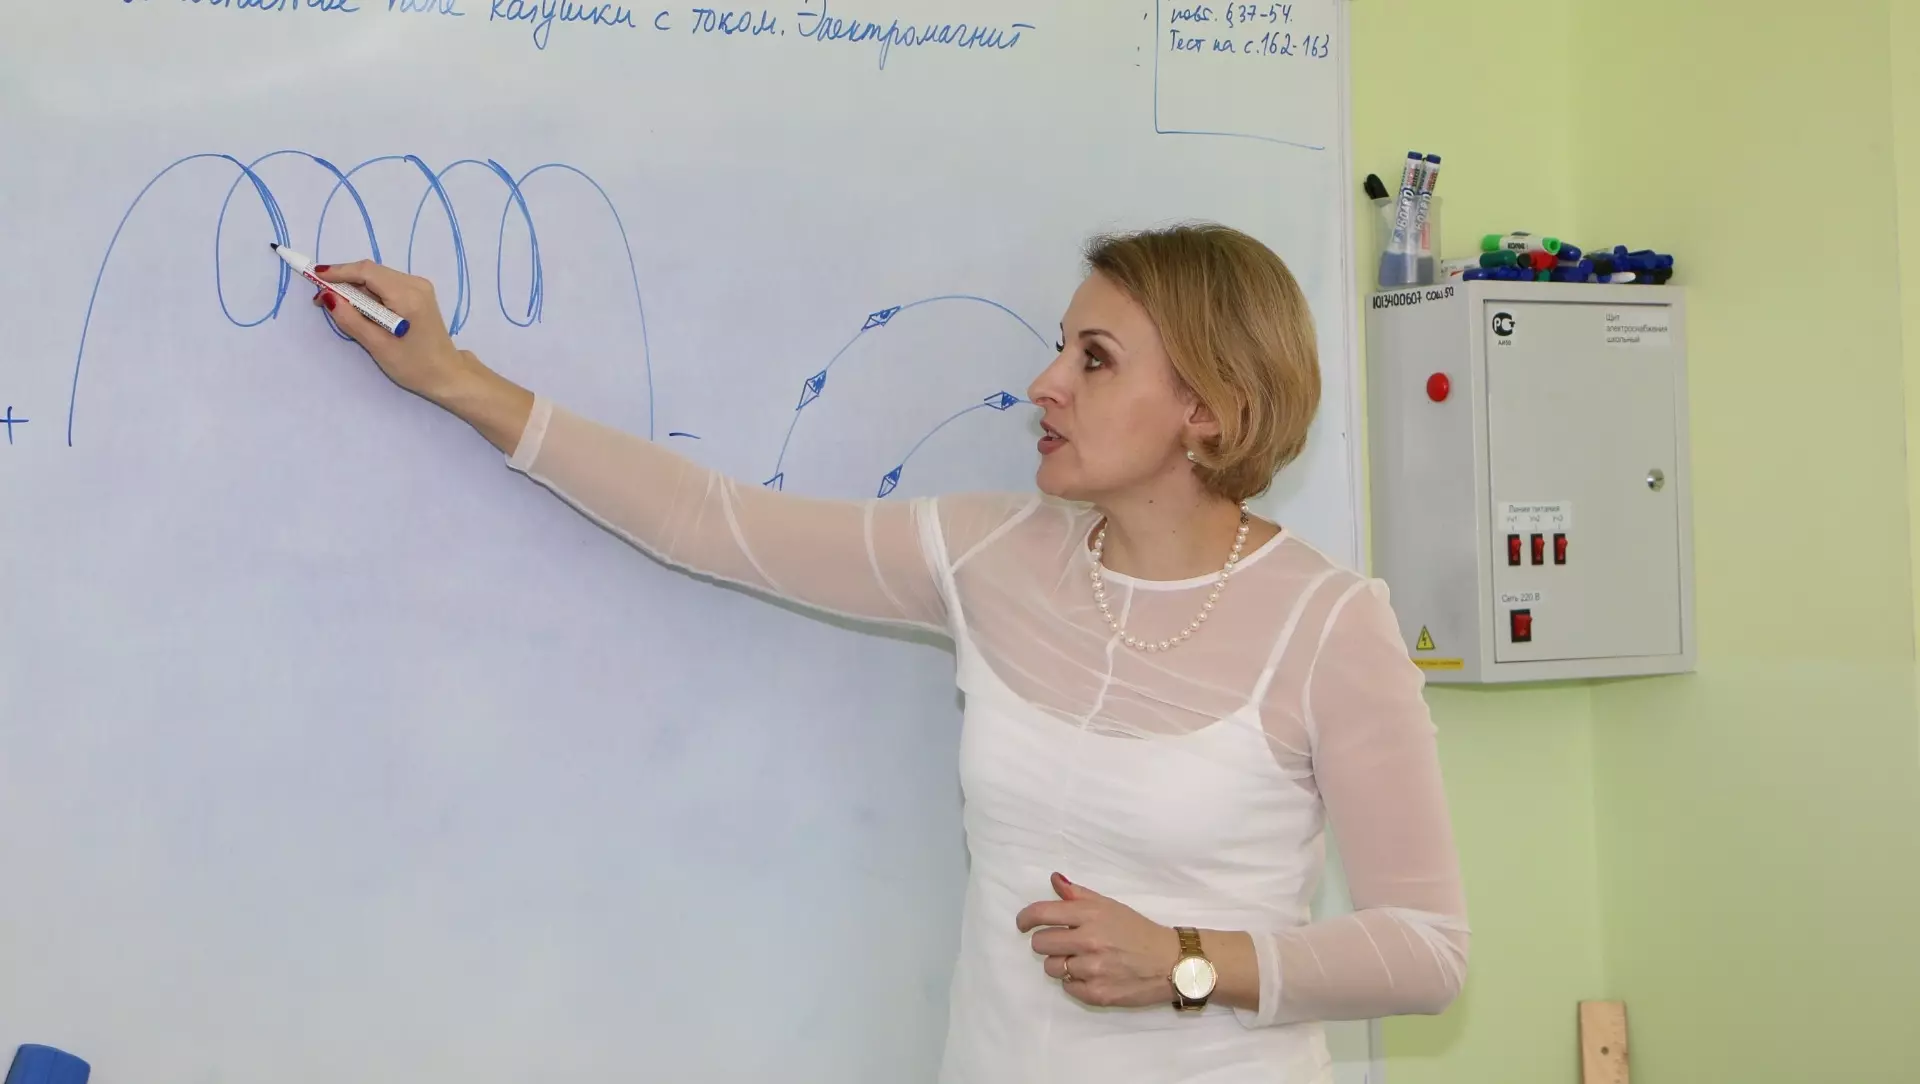 Работодатели Кузбасса готовы платить педагогам более 50 тысяч рублей